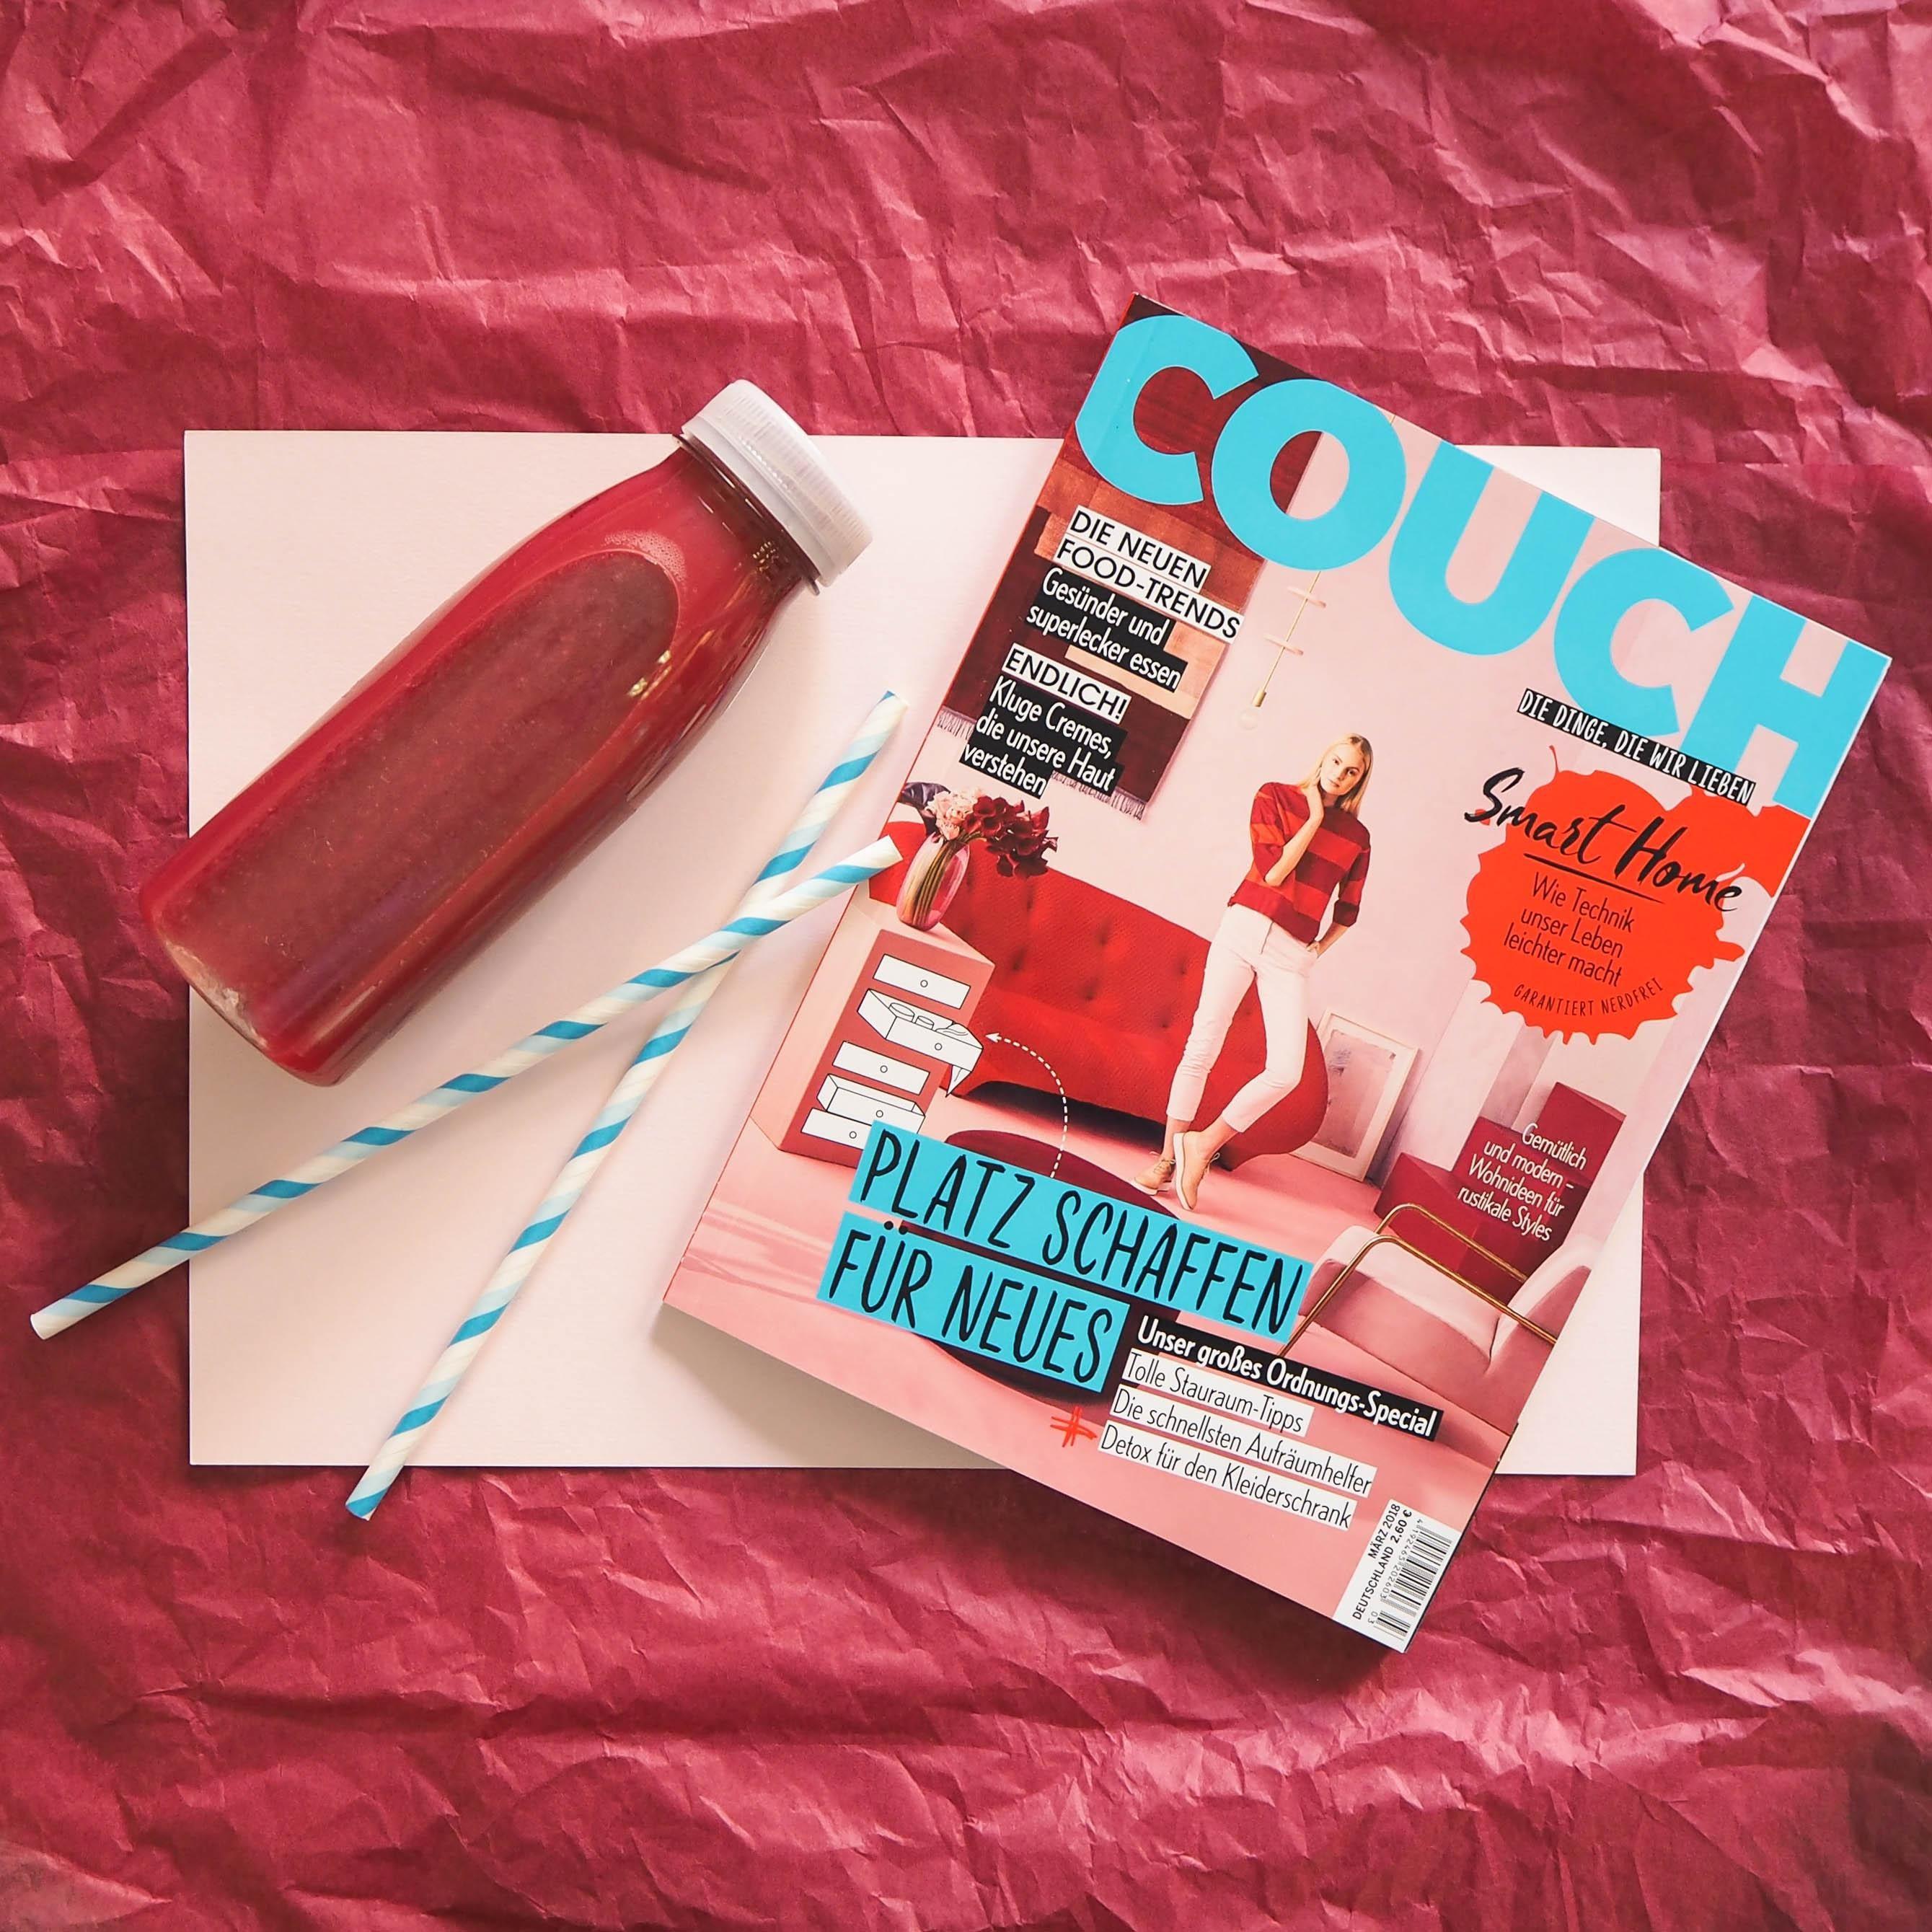 Neuer Monat, neue COUCH!❤️ Dieses Mal mit großem Ordnungs-Special und coolen Smart Home Gadgets! #couchmagazin #couchabo